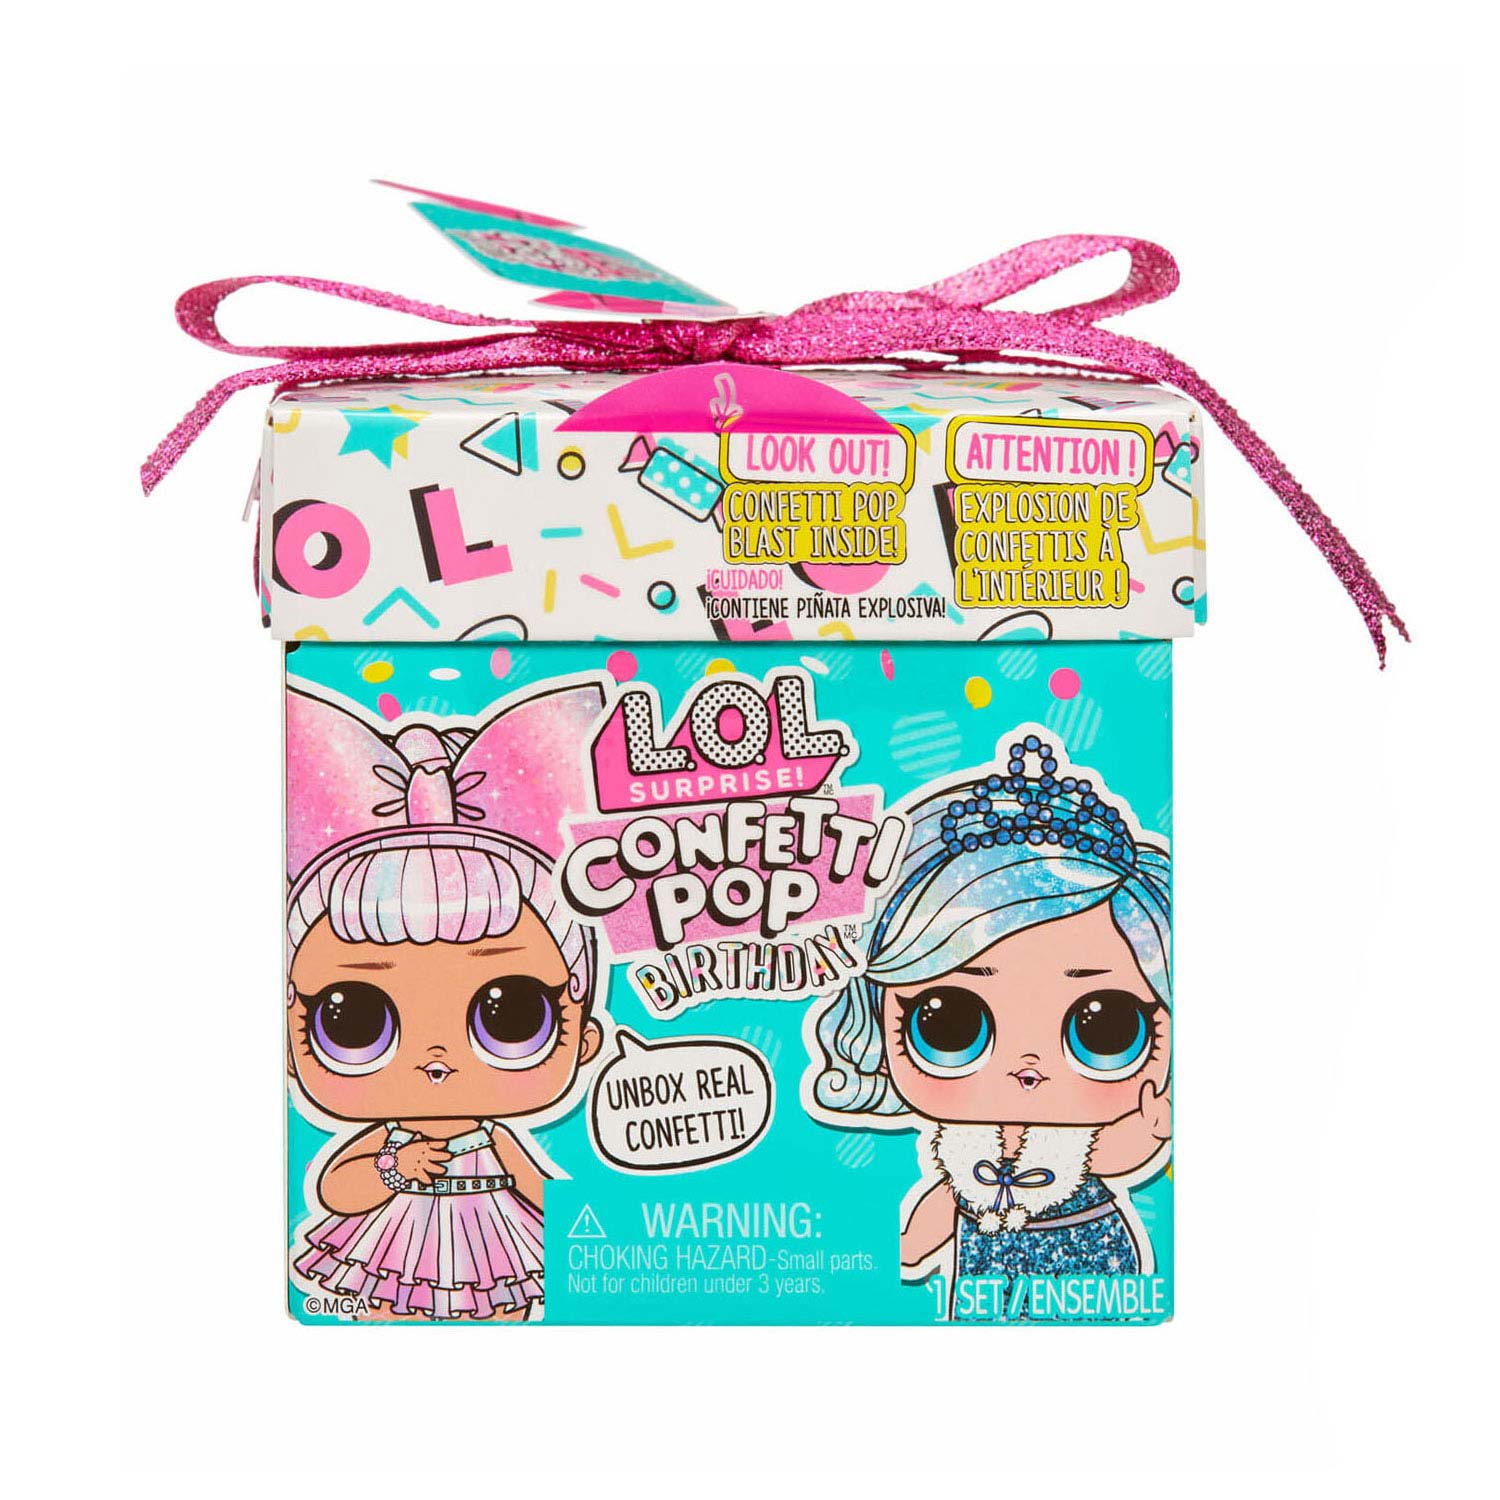 L.O.L. Surprise! Confetti Pop Birthday